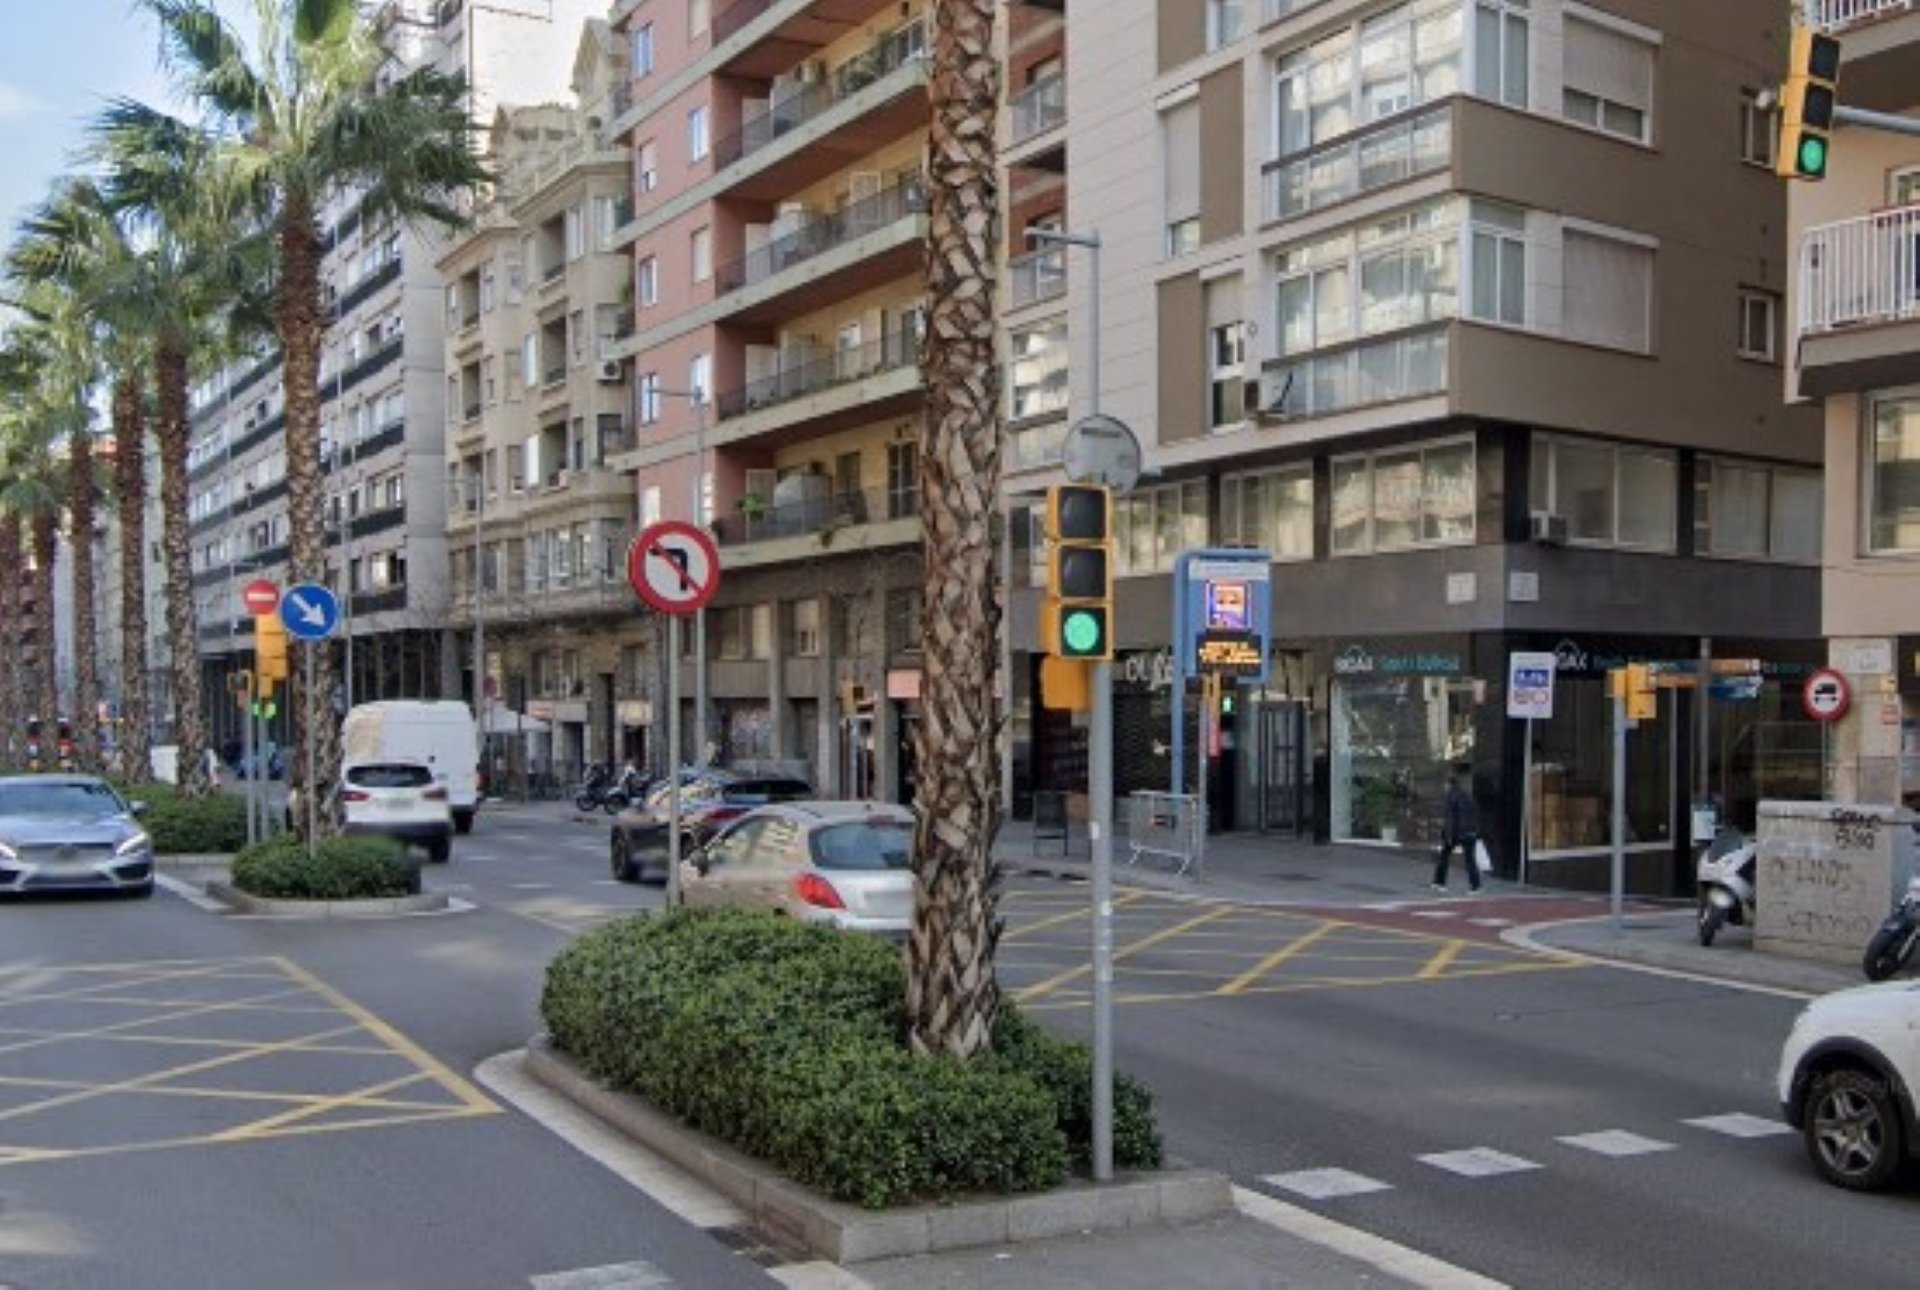 Intersecció on va succeir l'accident entre un motorista i la Guàrdia Urbana de Barcelona